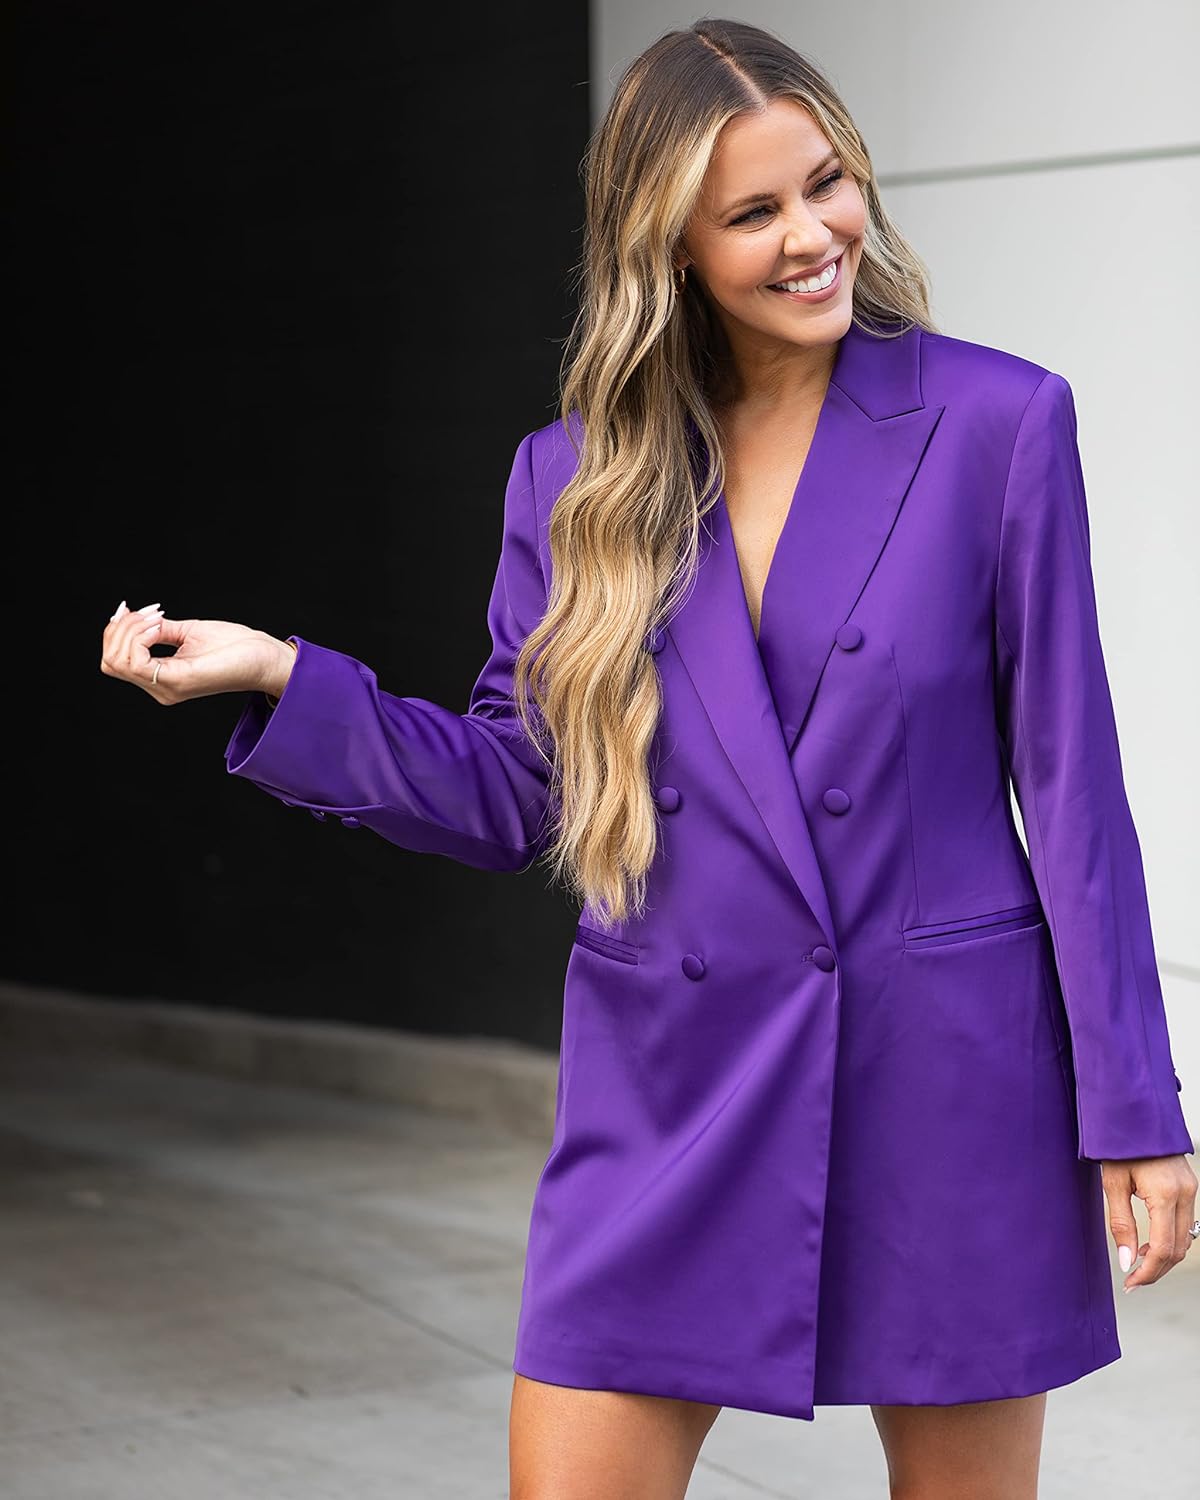 The Drop Women' Purple Double Breast Blazer Dress by @Kerrently